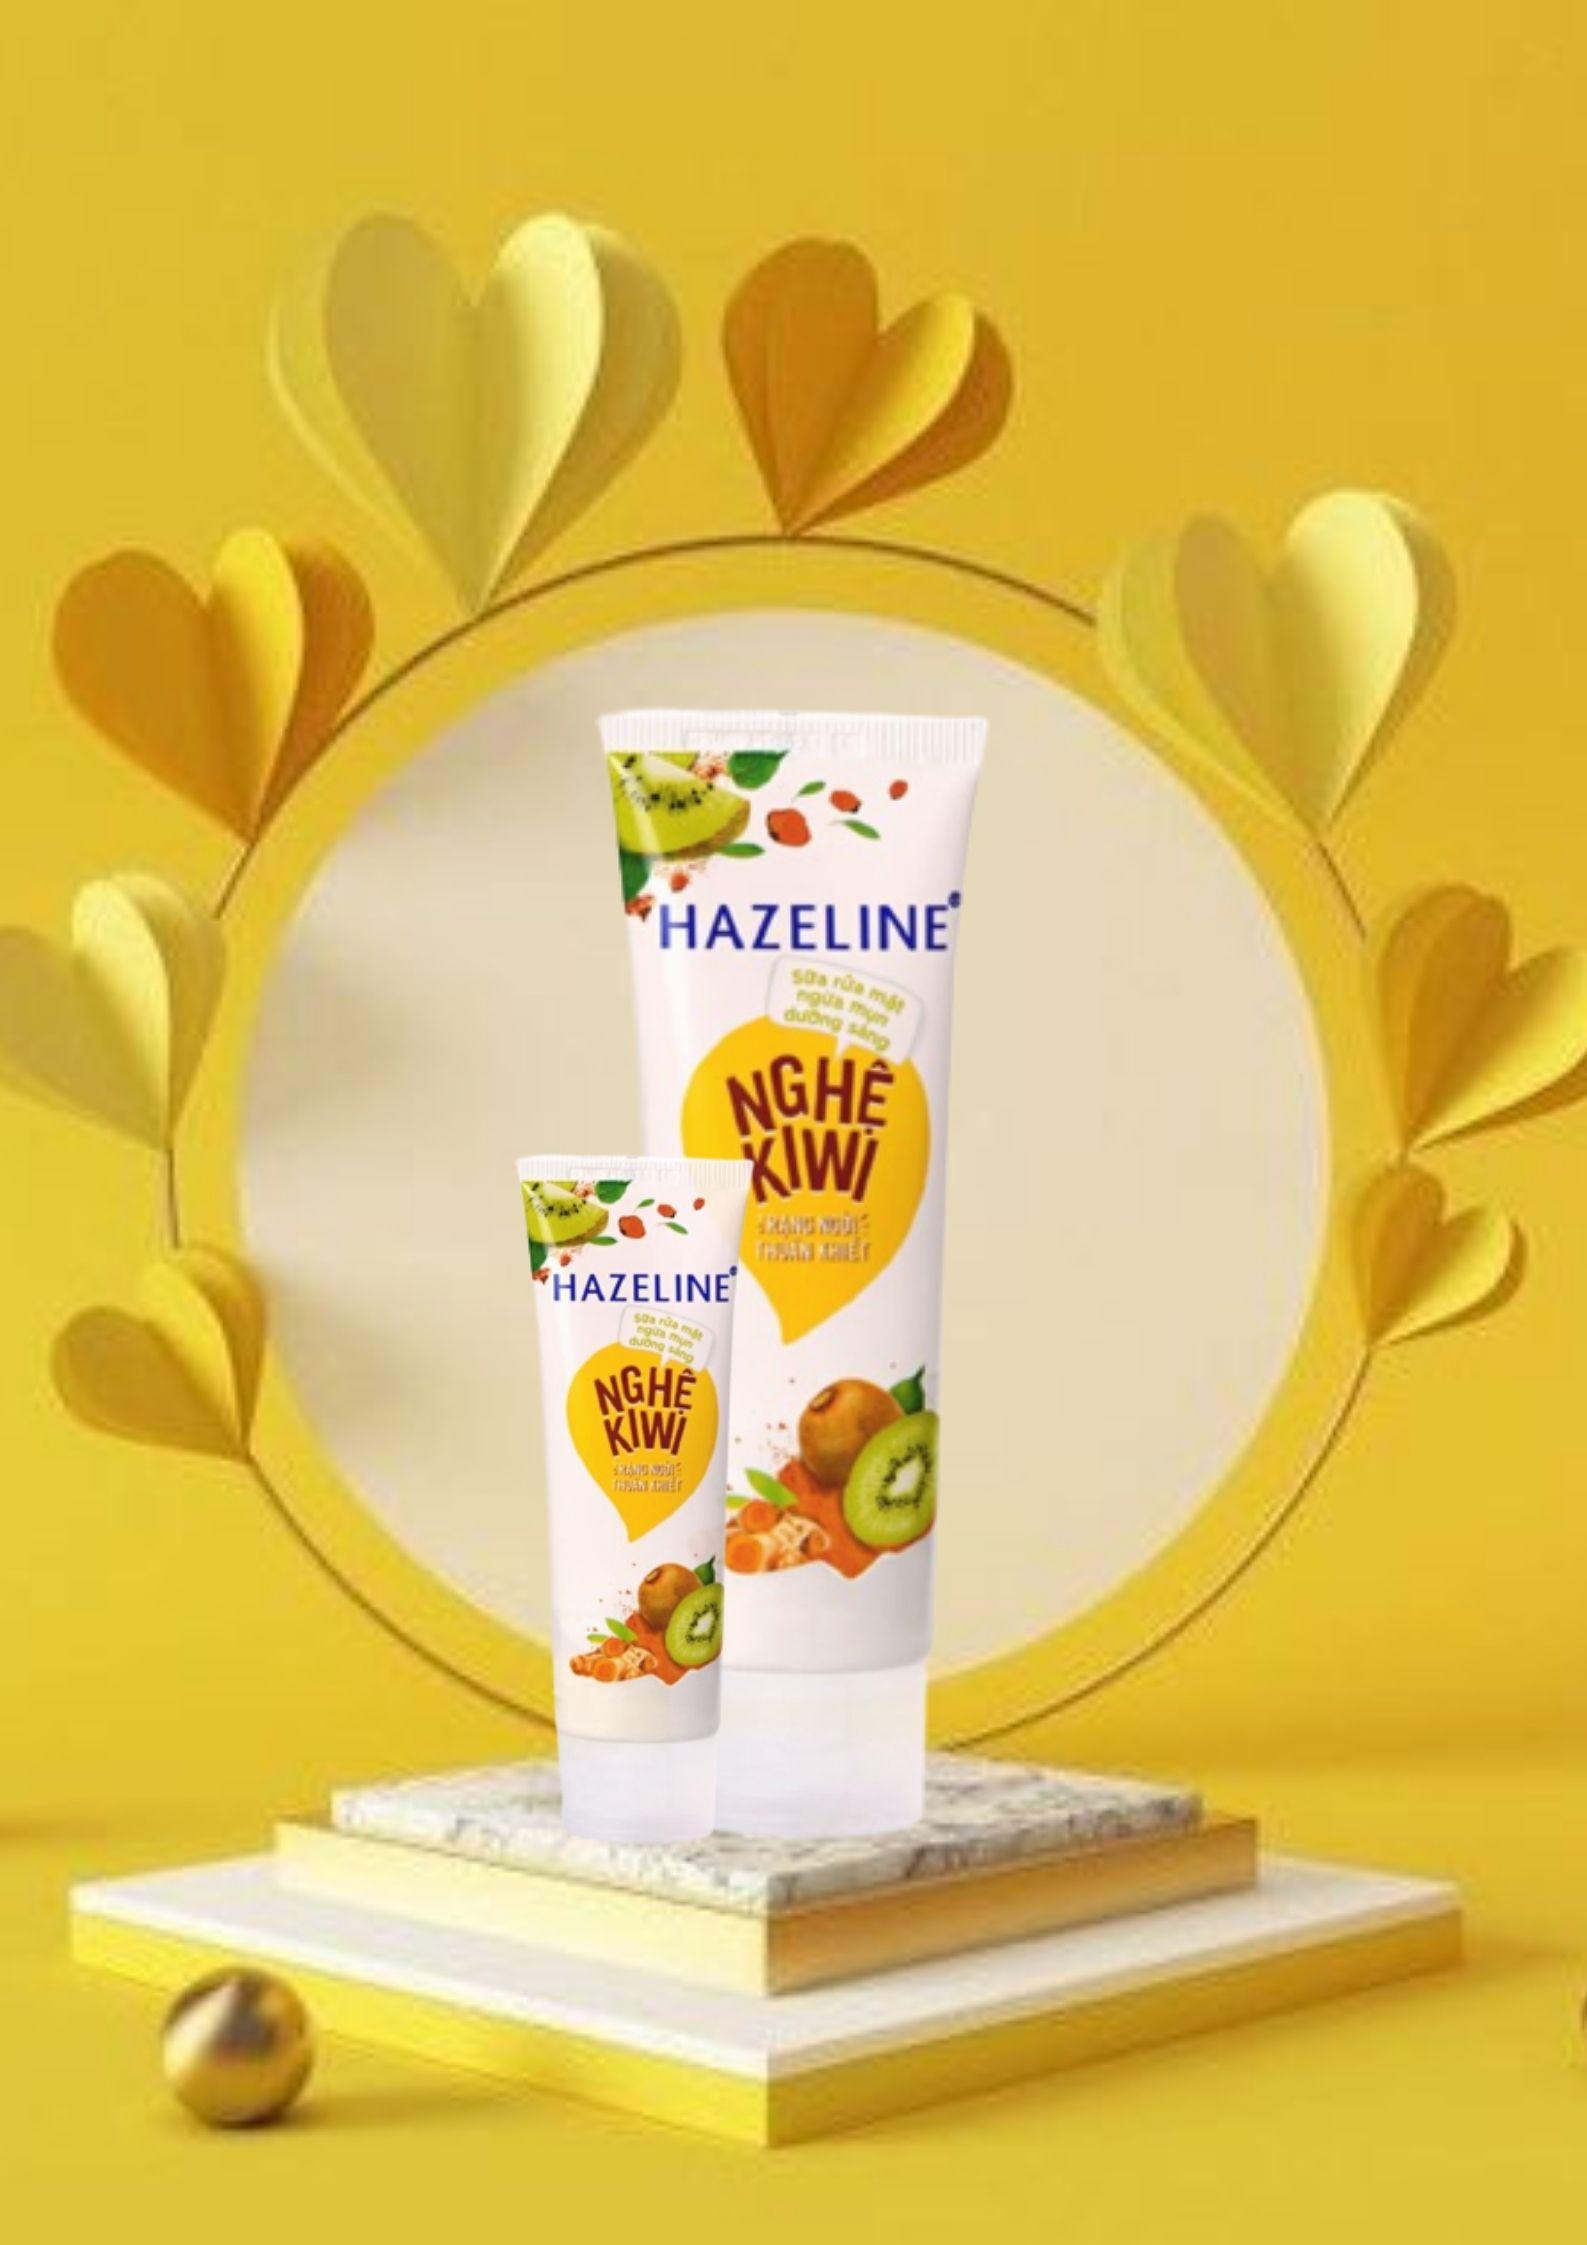 Sữa rửa mặt Hazeline nghệ kiwi sản phẩm bán chạy nhất hiện nay